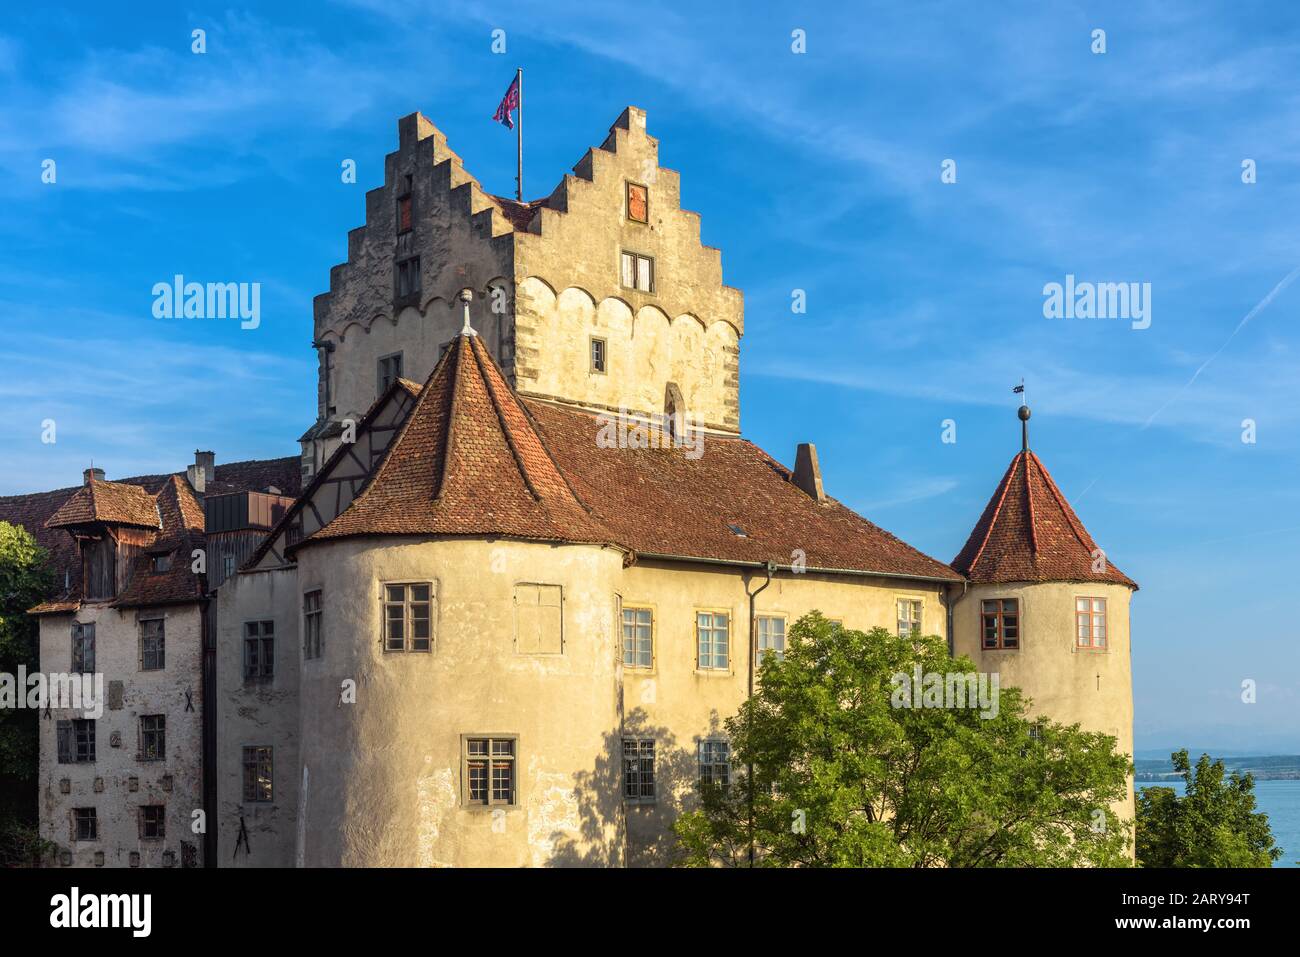 Castello Di Meersburg Sul Lago Di Costanza O Bodensee, Germania. Questo castello medievale è un punto di riferimento della città. Vista sul vecchio castello tedesco in estate. Scena Foto Stock